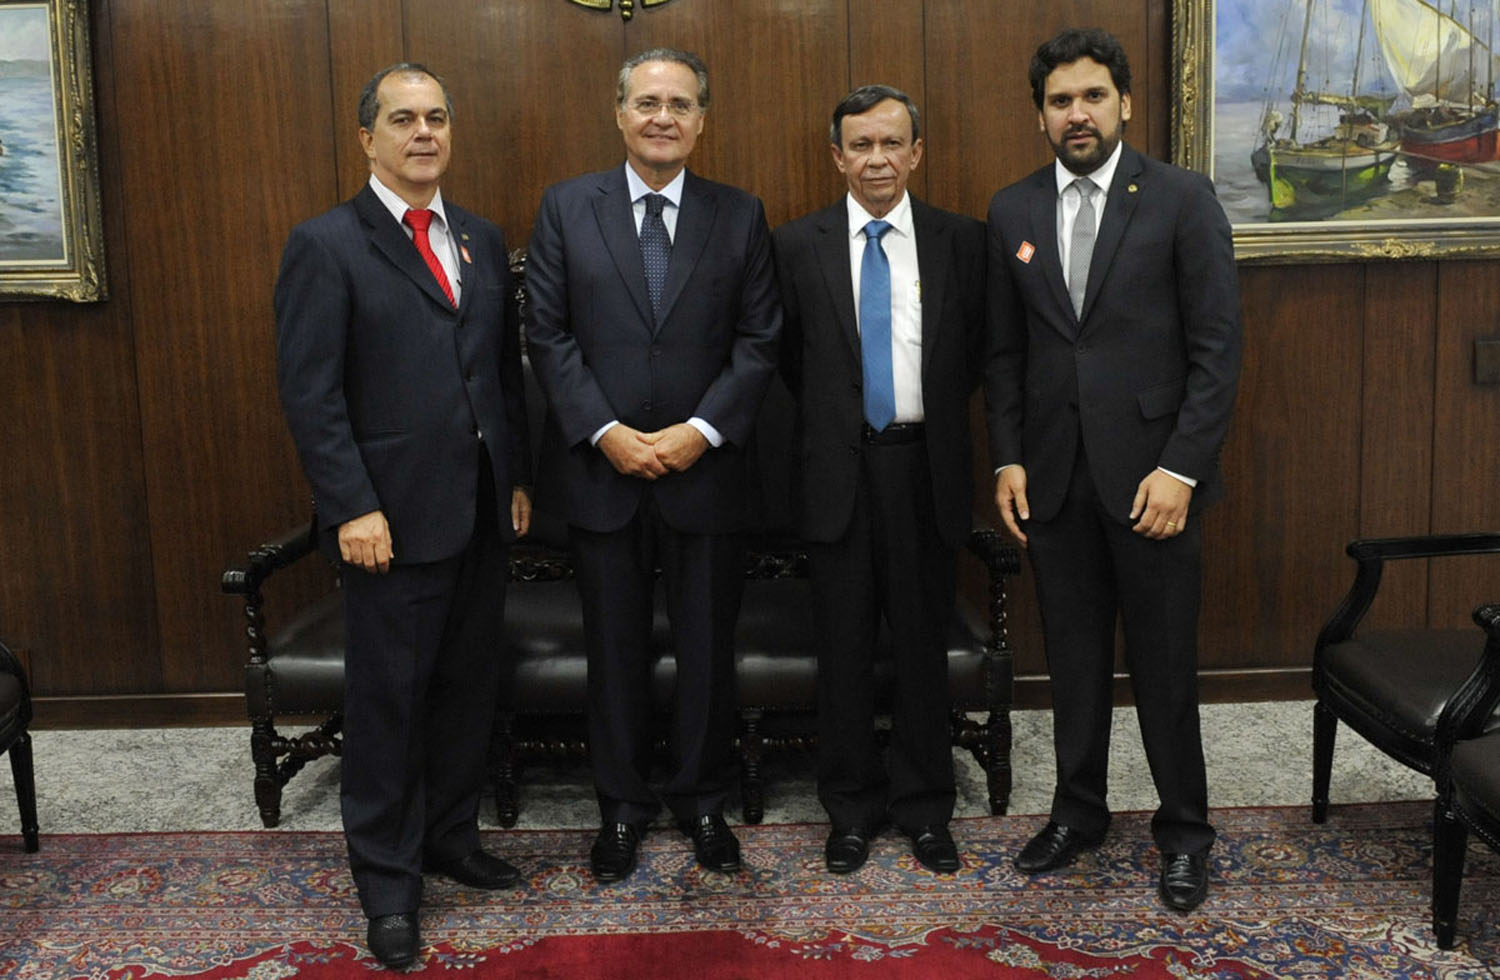 Deputados Luiz Dantas, Ronaldo Medeiros e Isnaldo Bulhões reunidos com o presidente do Senado Renan Calheiros.jpg